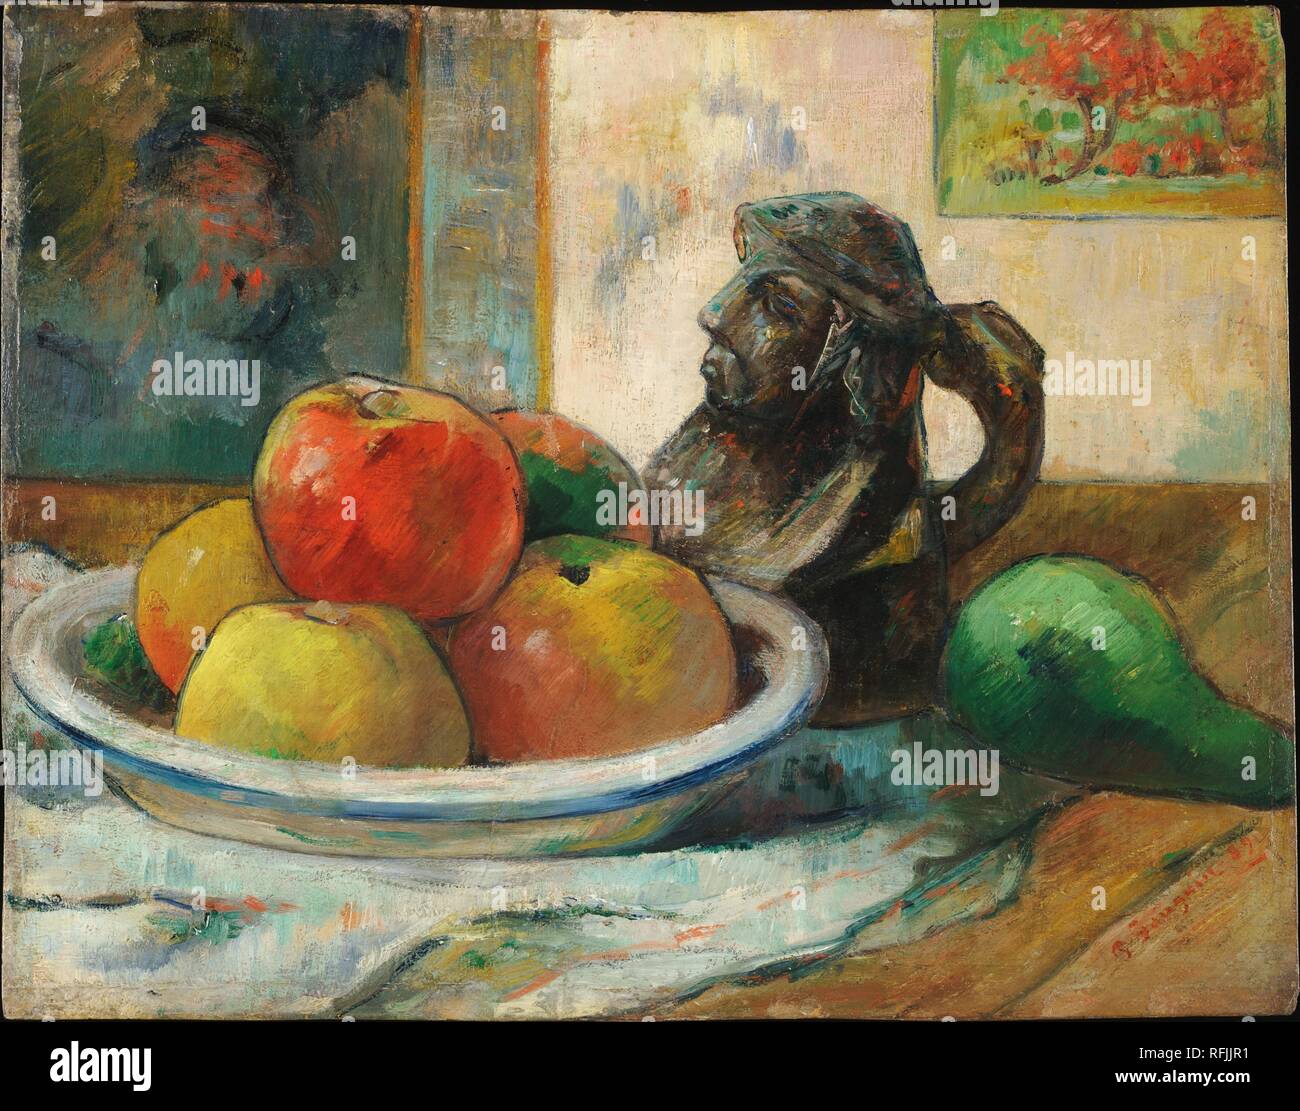 Pommes, poire et Céramique/Stilleben mit Äpfel, Birne, und einem keramischen Portrait Kanne. Datum/Zeitraum: 1889. Malerei. Öl auf Leinwand. Höhe: 28,6 cm (11,2 in); Breite: 36,2 cm (14,2 in). Autor: Paul Gauguin. Stockfoto